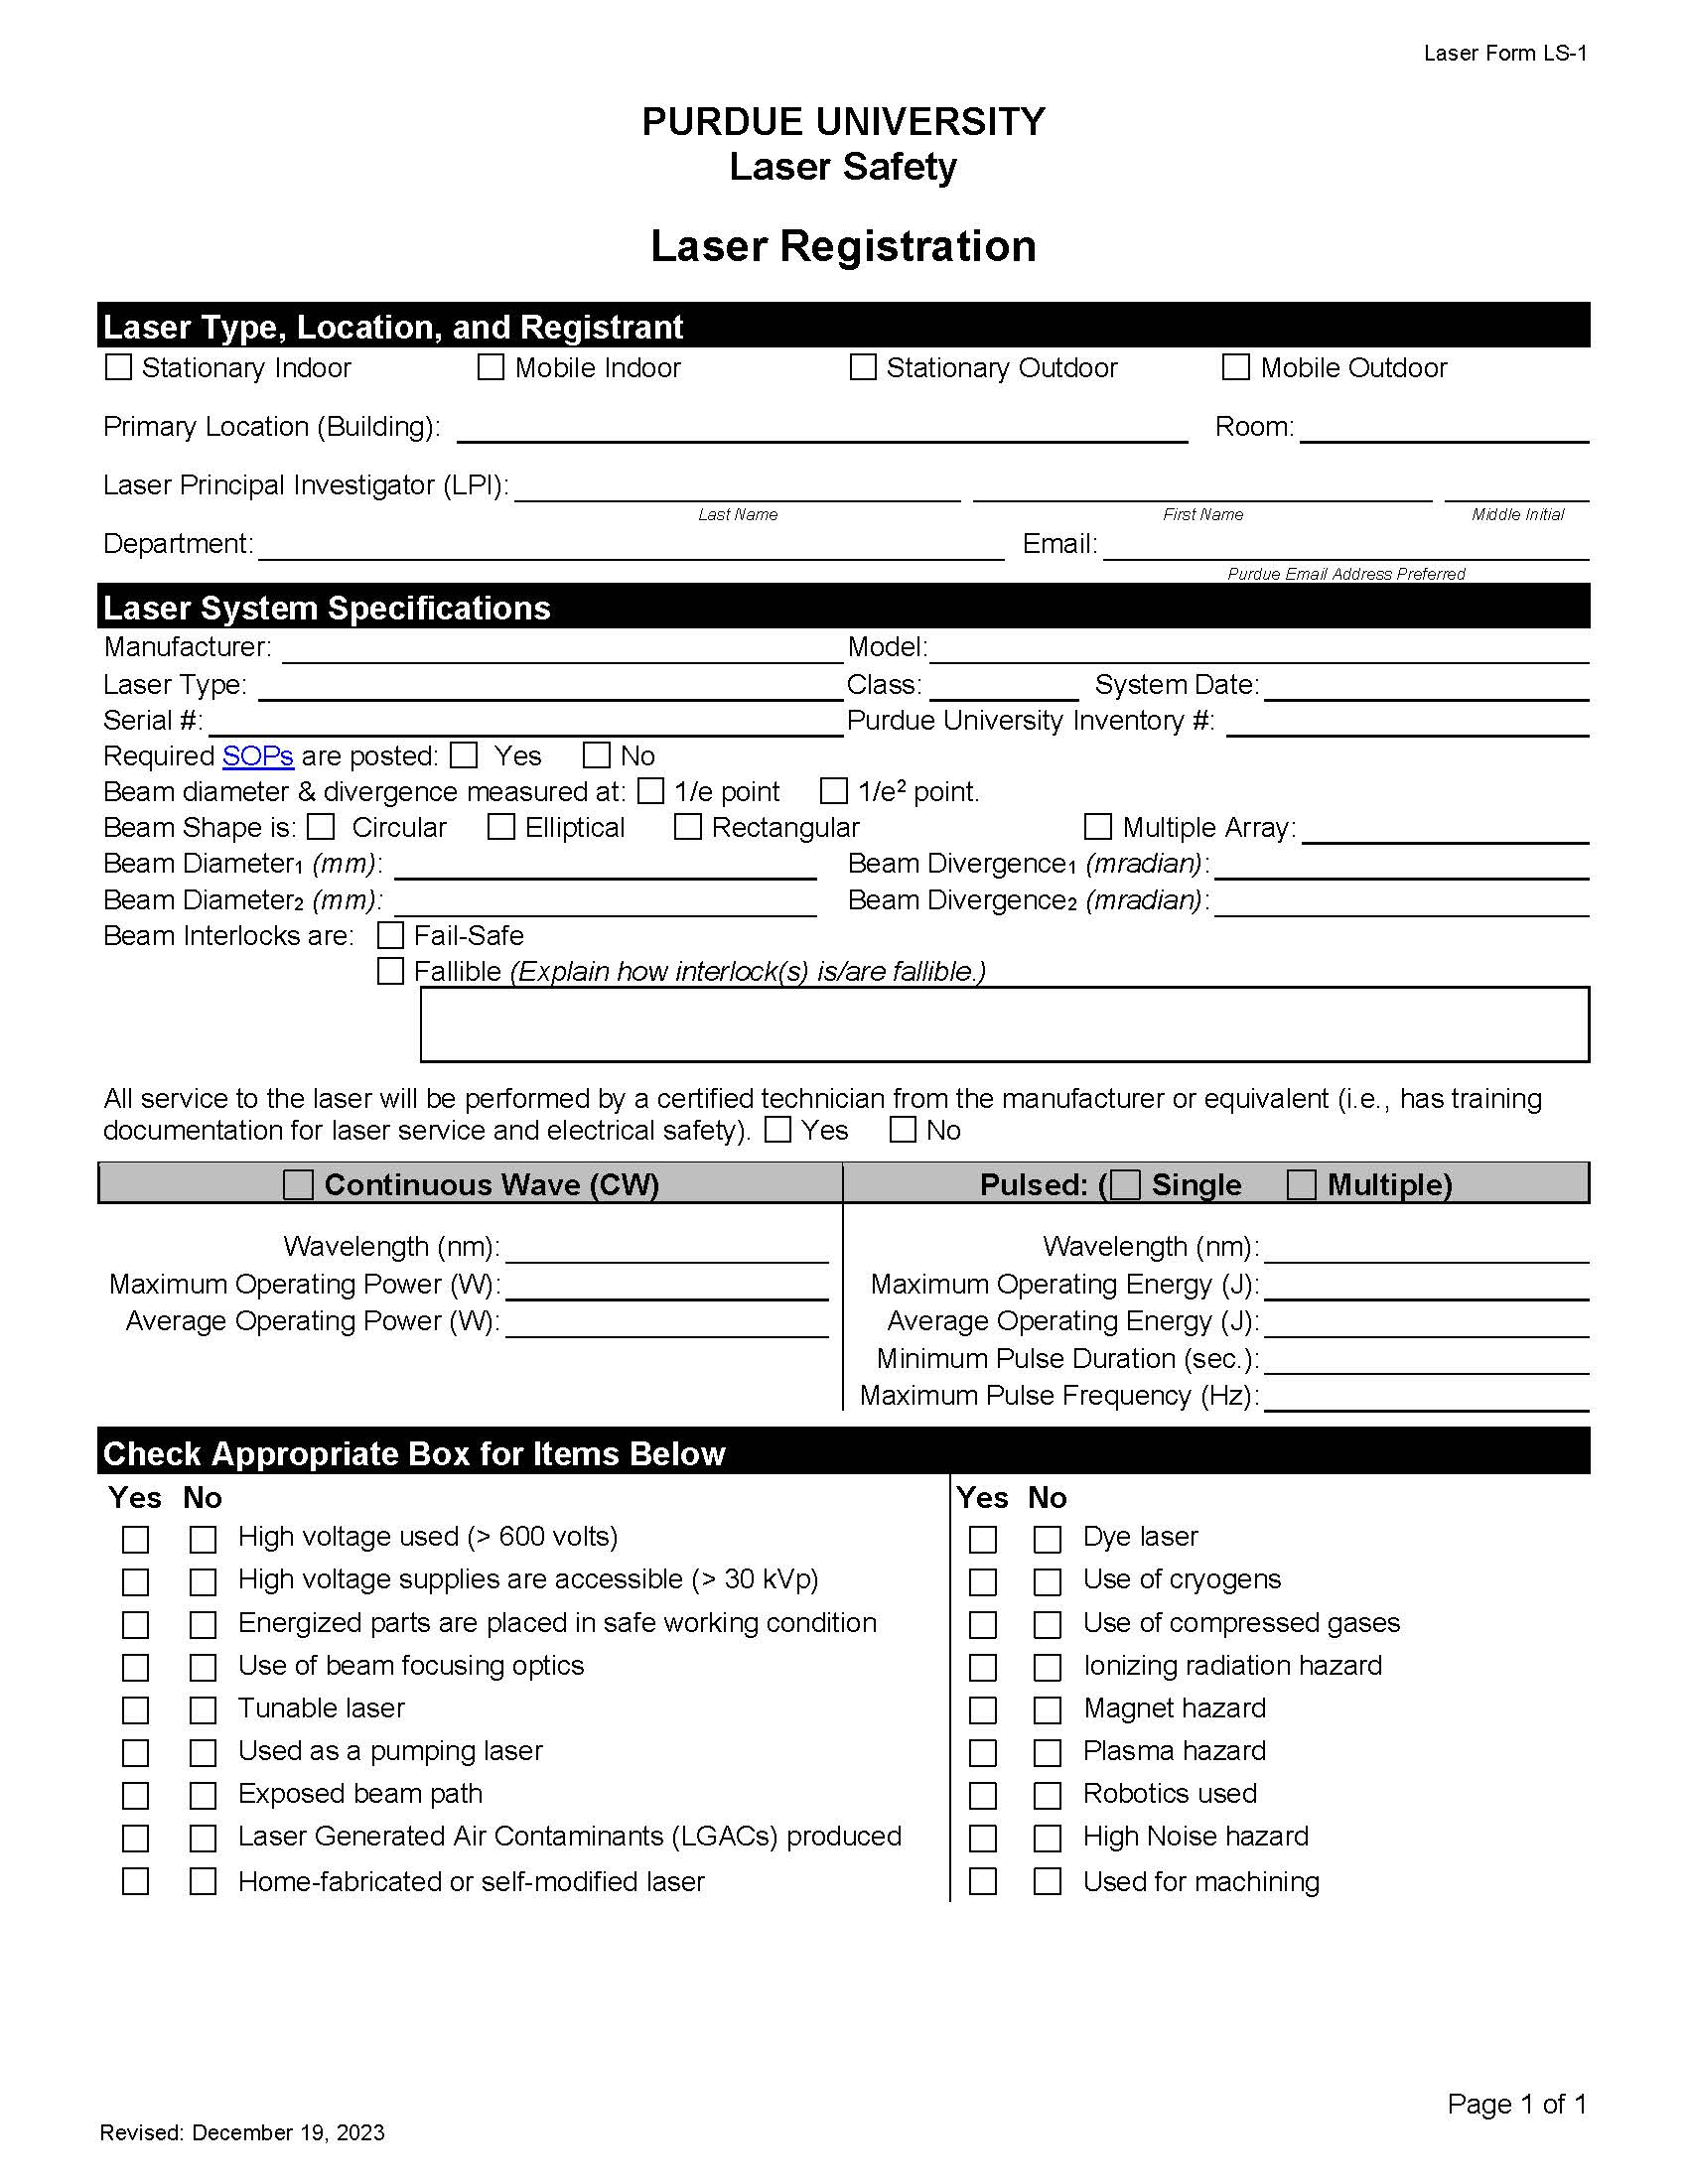 laser registration form